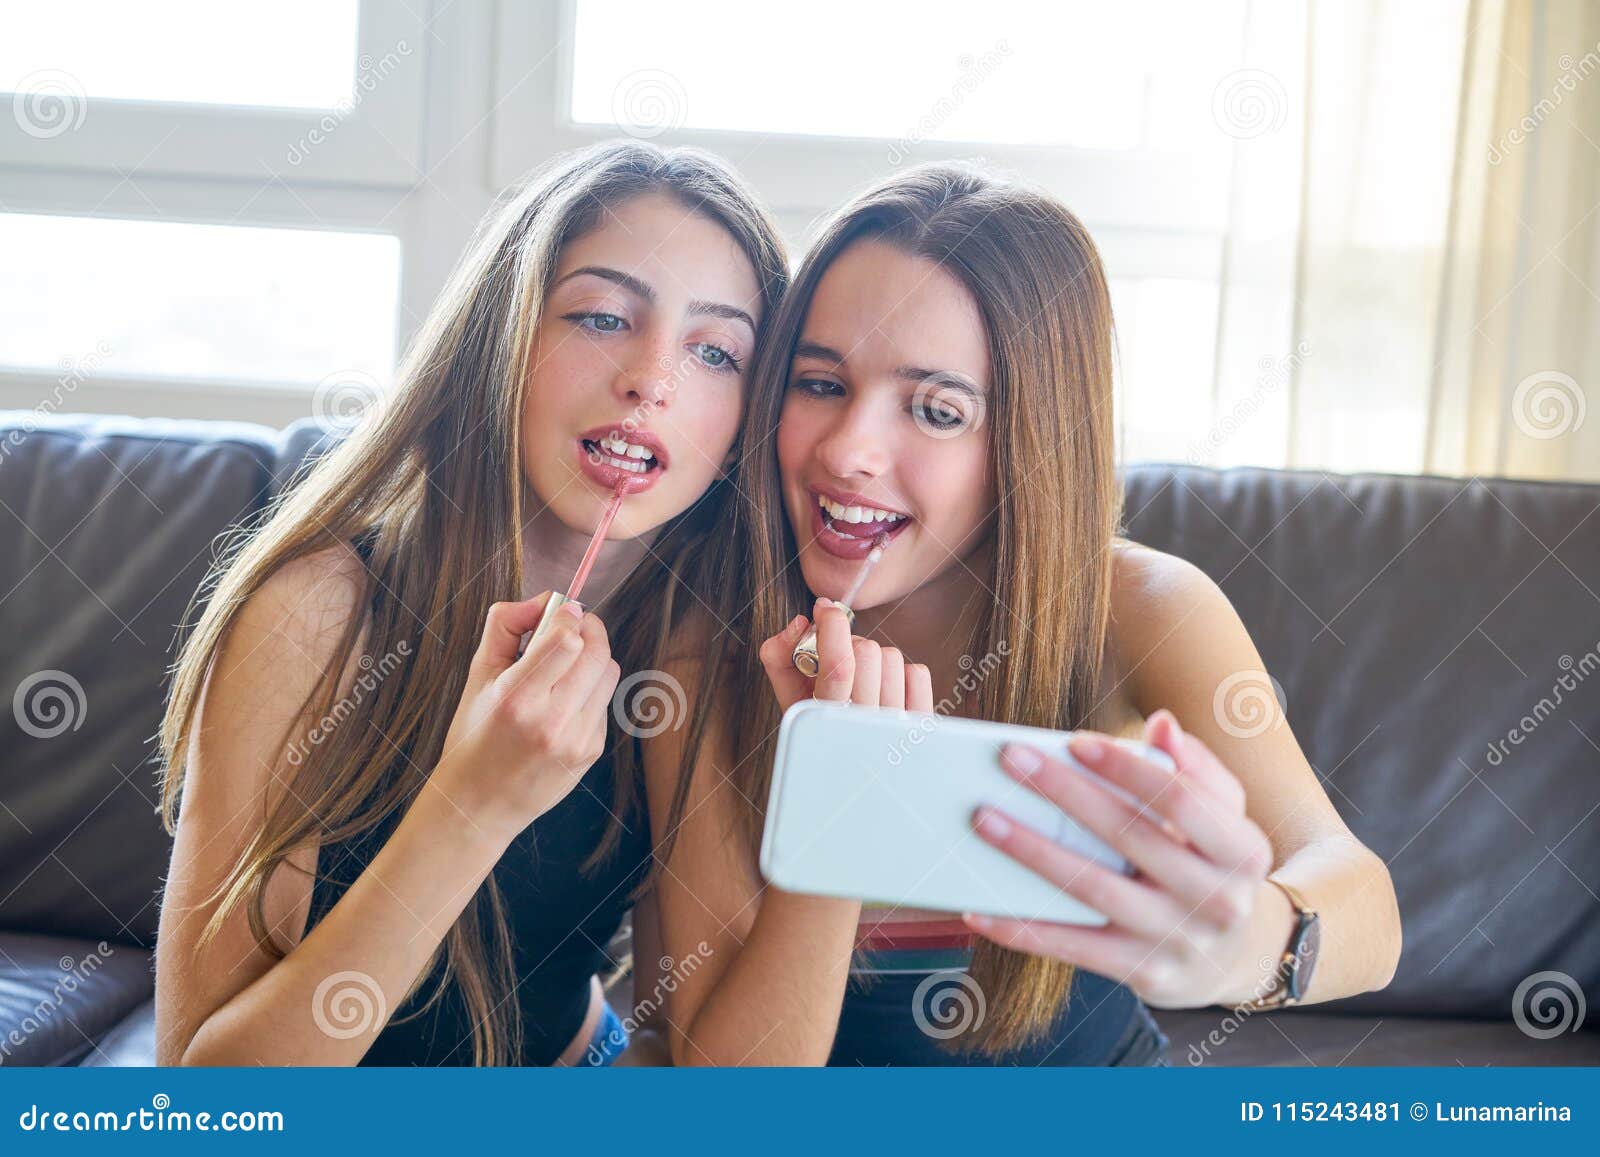 Appareil Photo De Selfie De Maquillage De Meilleurs Amis De Filles D Adolescent Image Stock